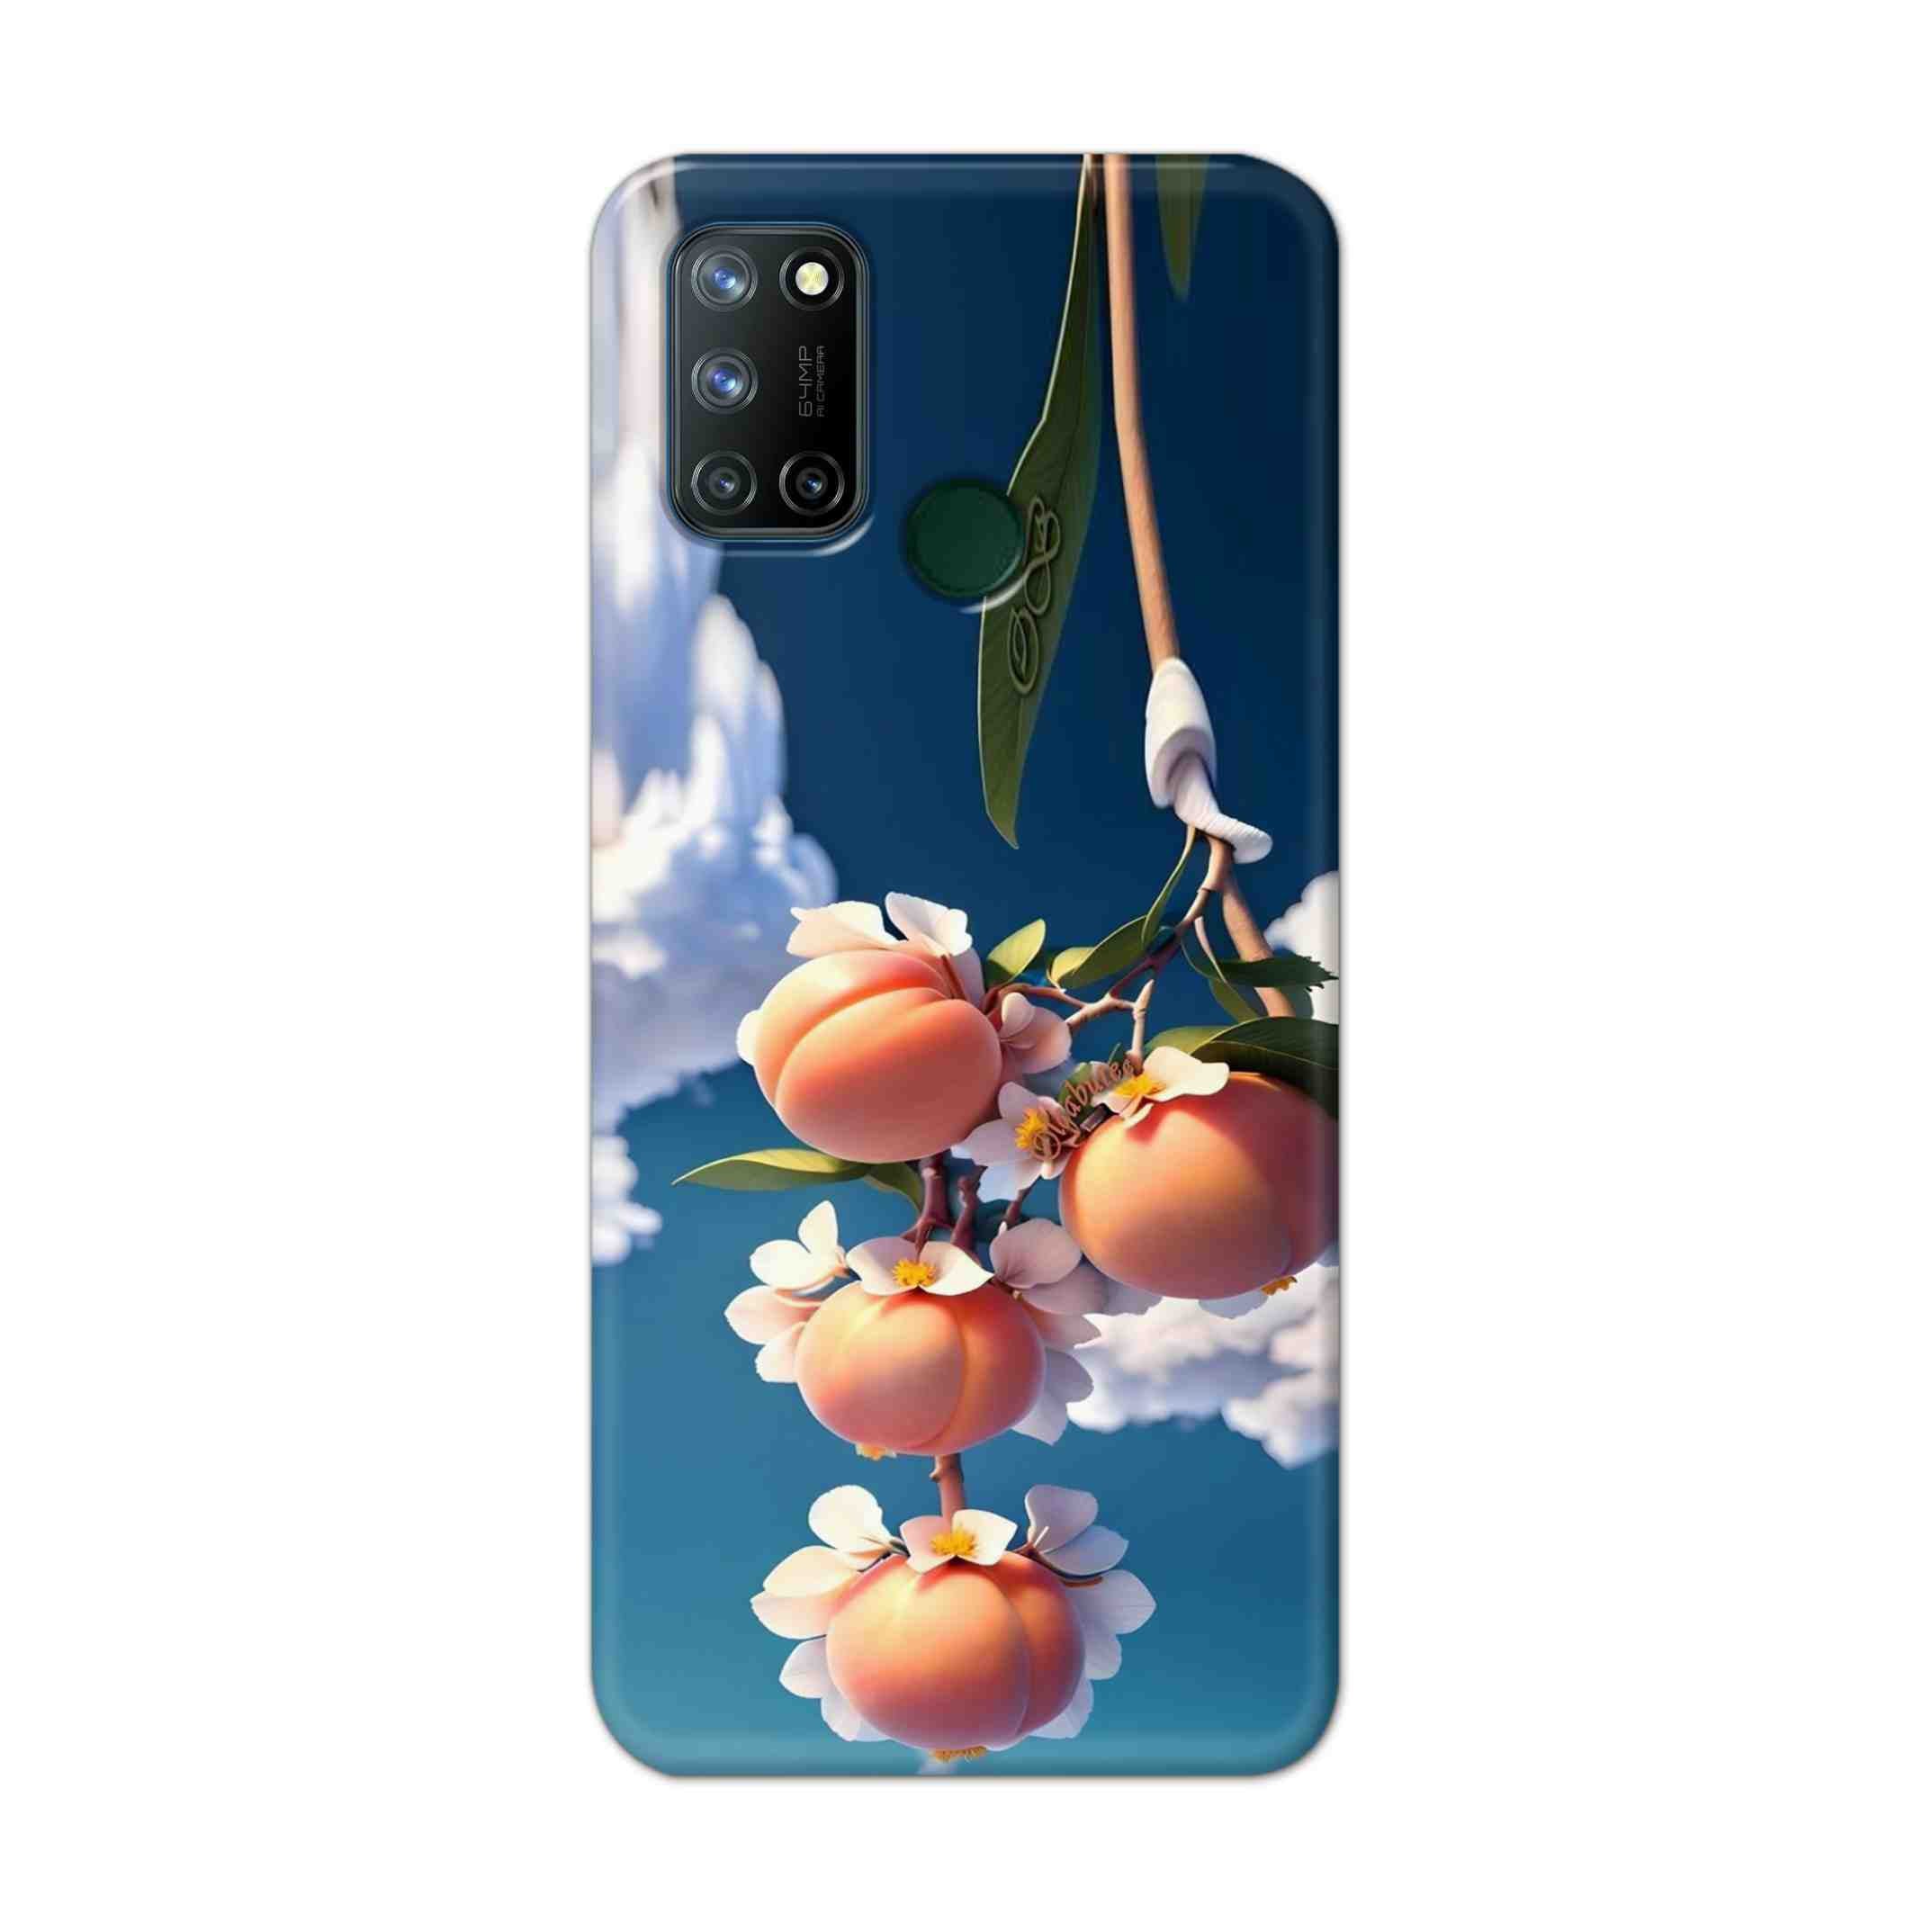 Buy Fruit Hard Back Mobile Phone Case Cover For Realme 7i Online